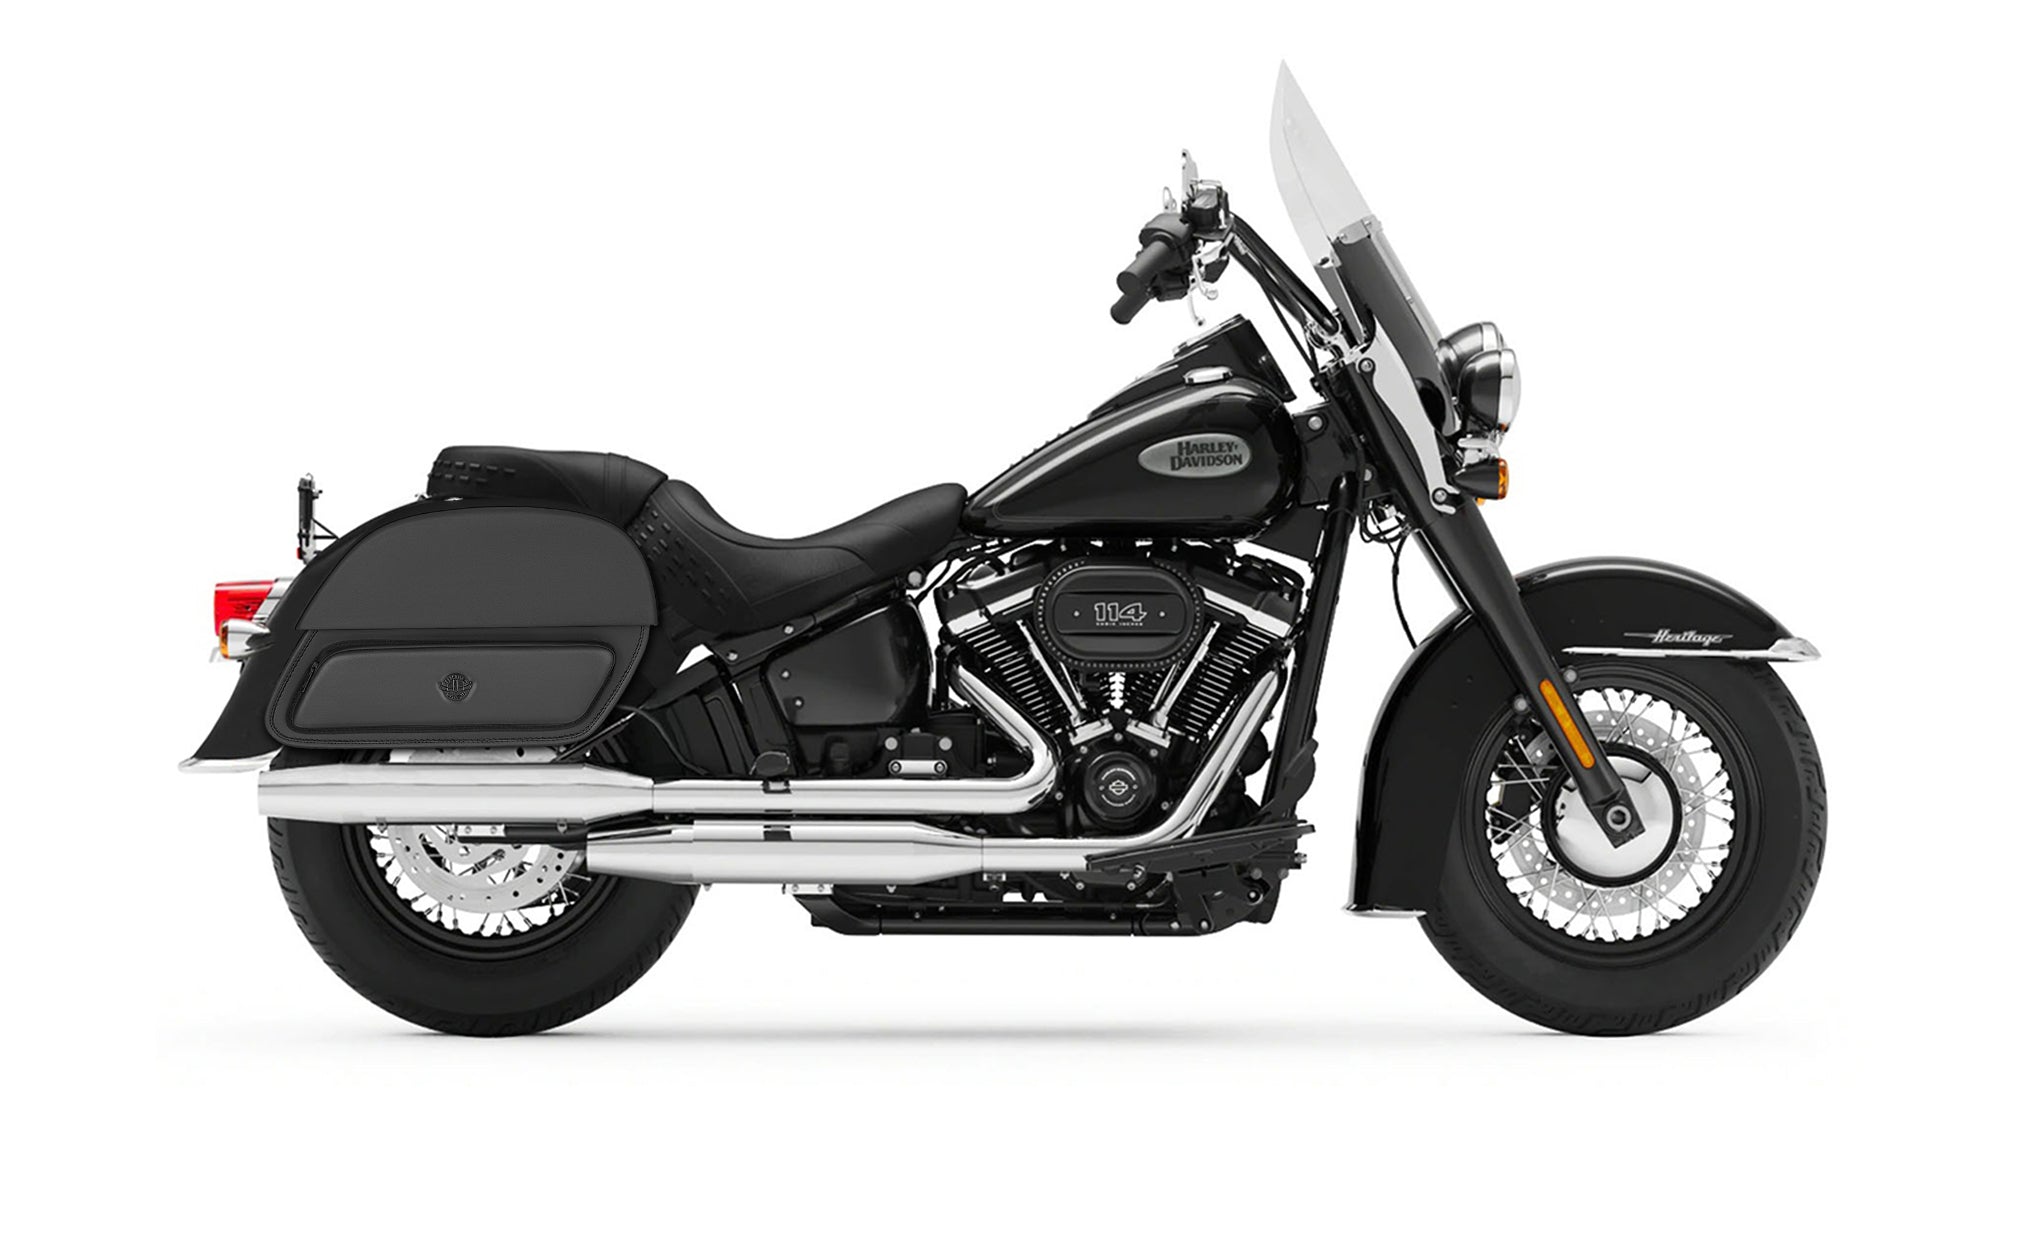 28L - Pantheon Medium Motorcycle Saddlebags for Harley Softail Heritage FLSTC/I on Bike Photo @expand